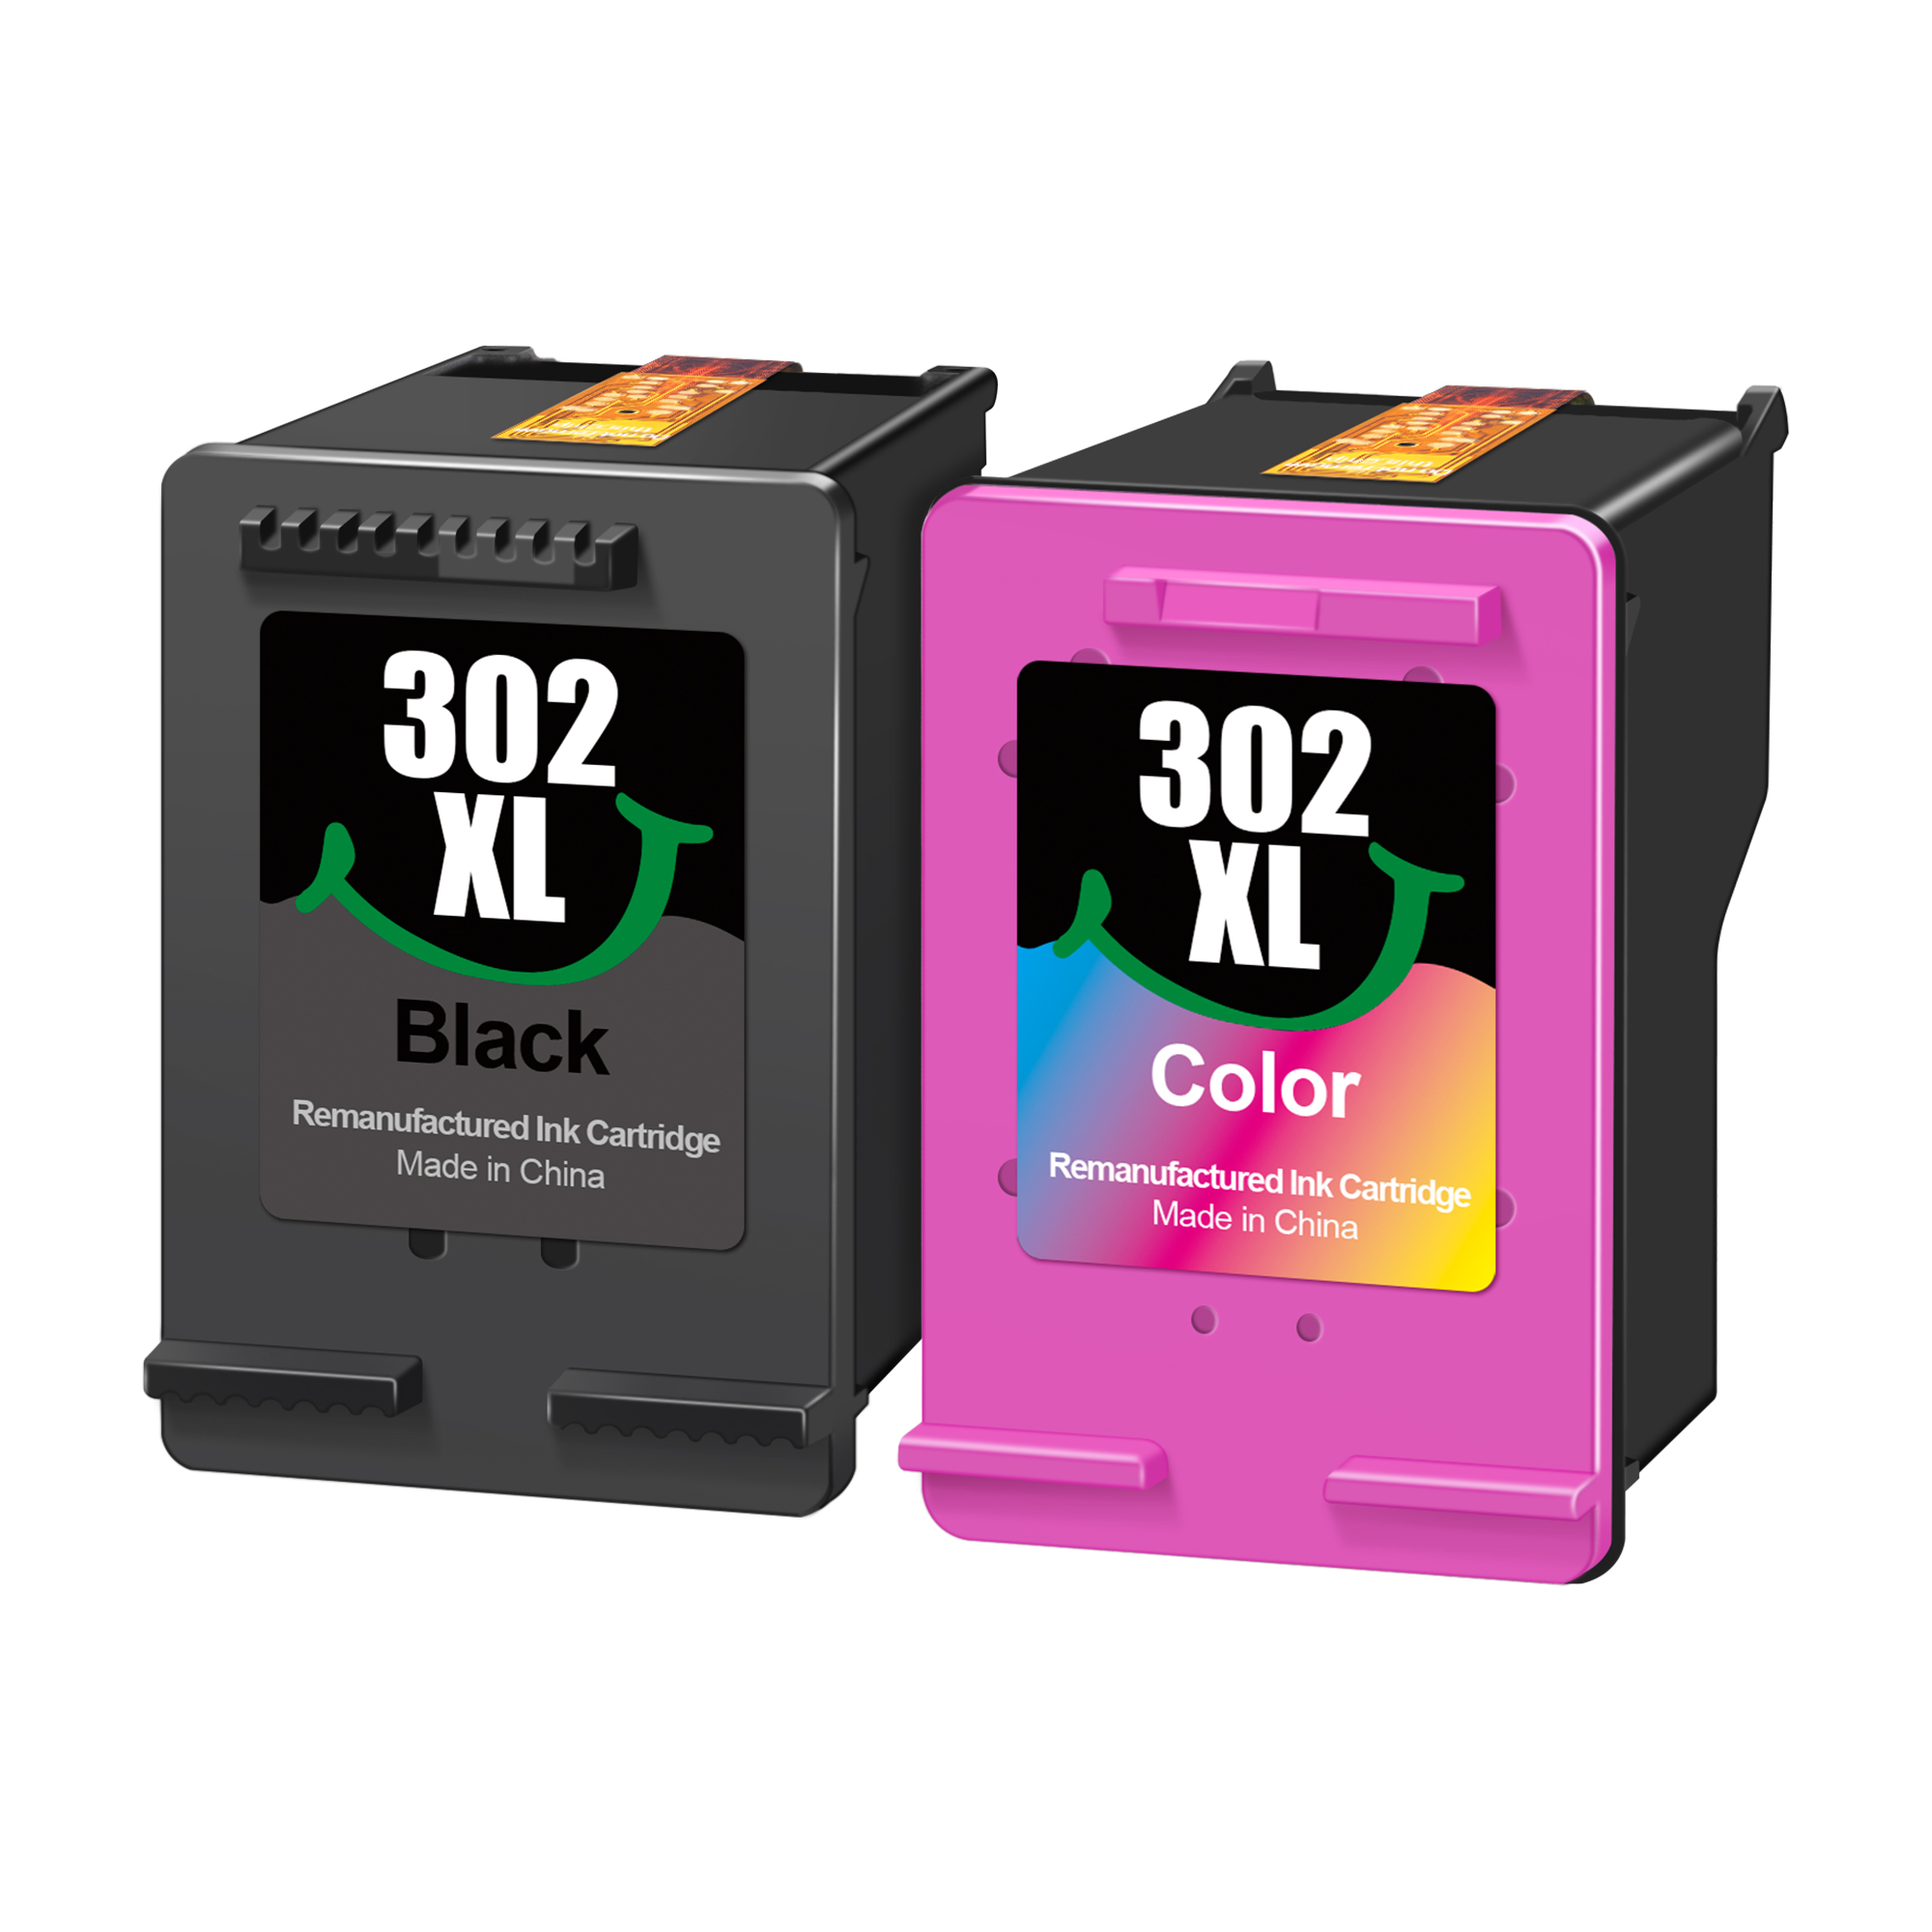 302 XL Cartouches d'encre Remanufacturées LXTEX 2 Pack Remplacement pour HP  302/302XL pour DeskJet 1110 2130 2134 3630 3632 3634 - Cdiscount  Informatique